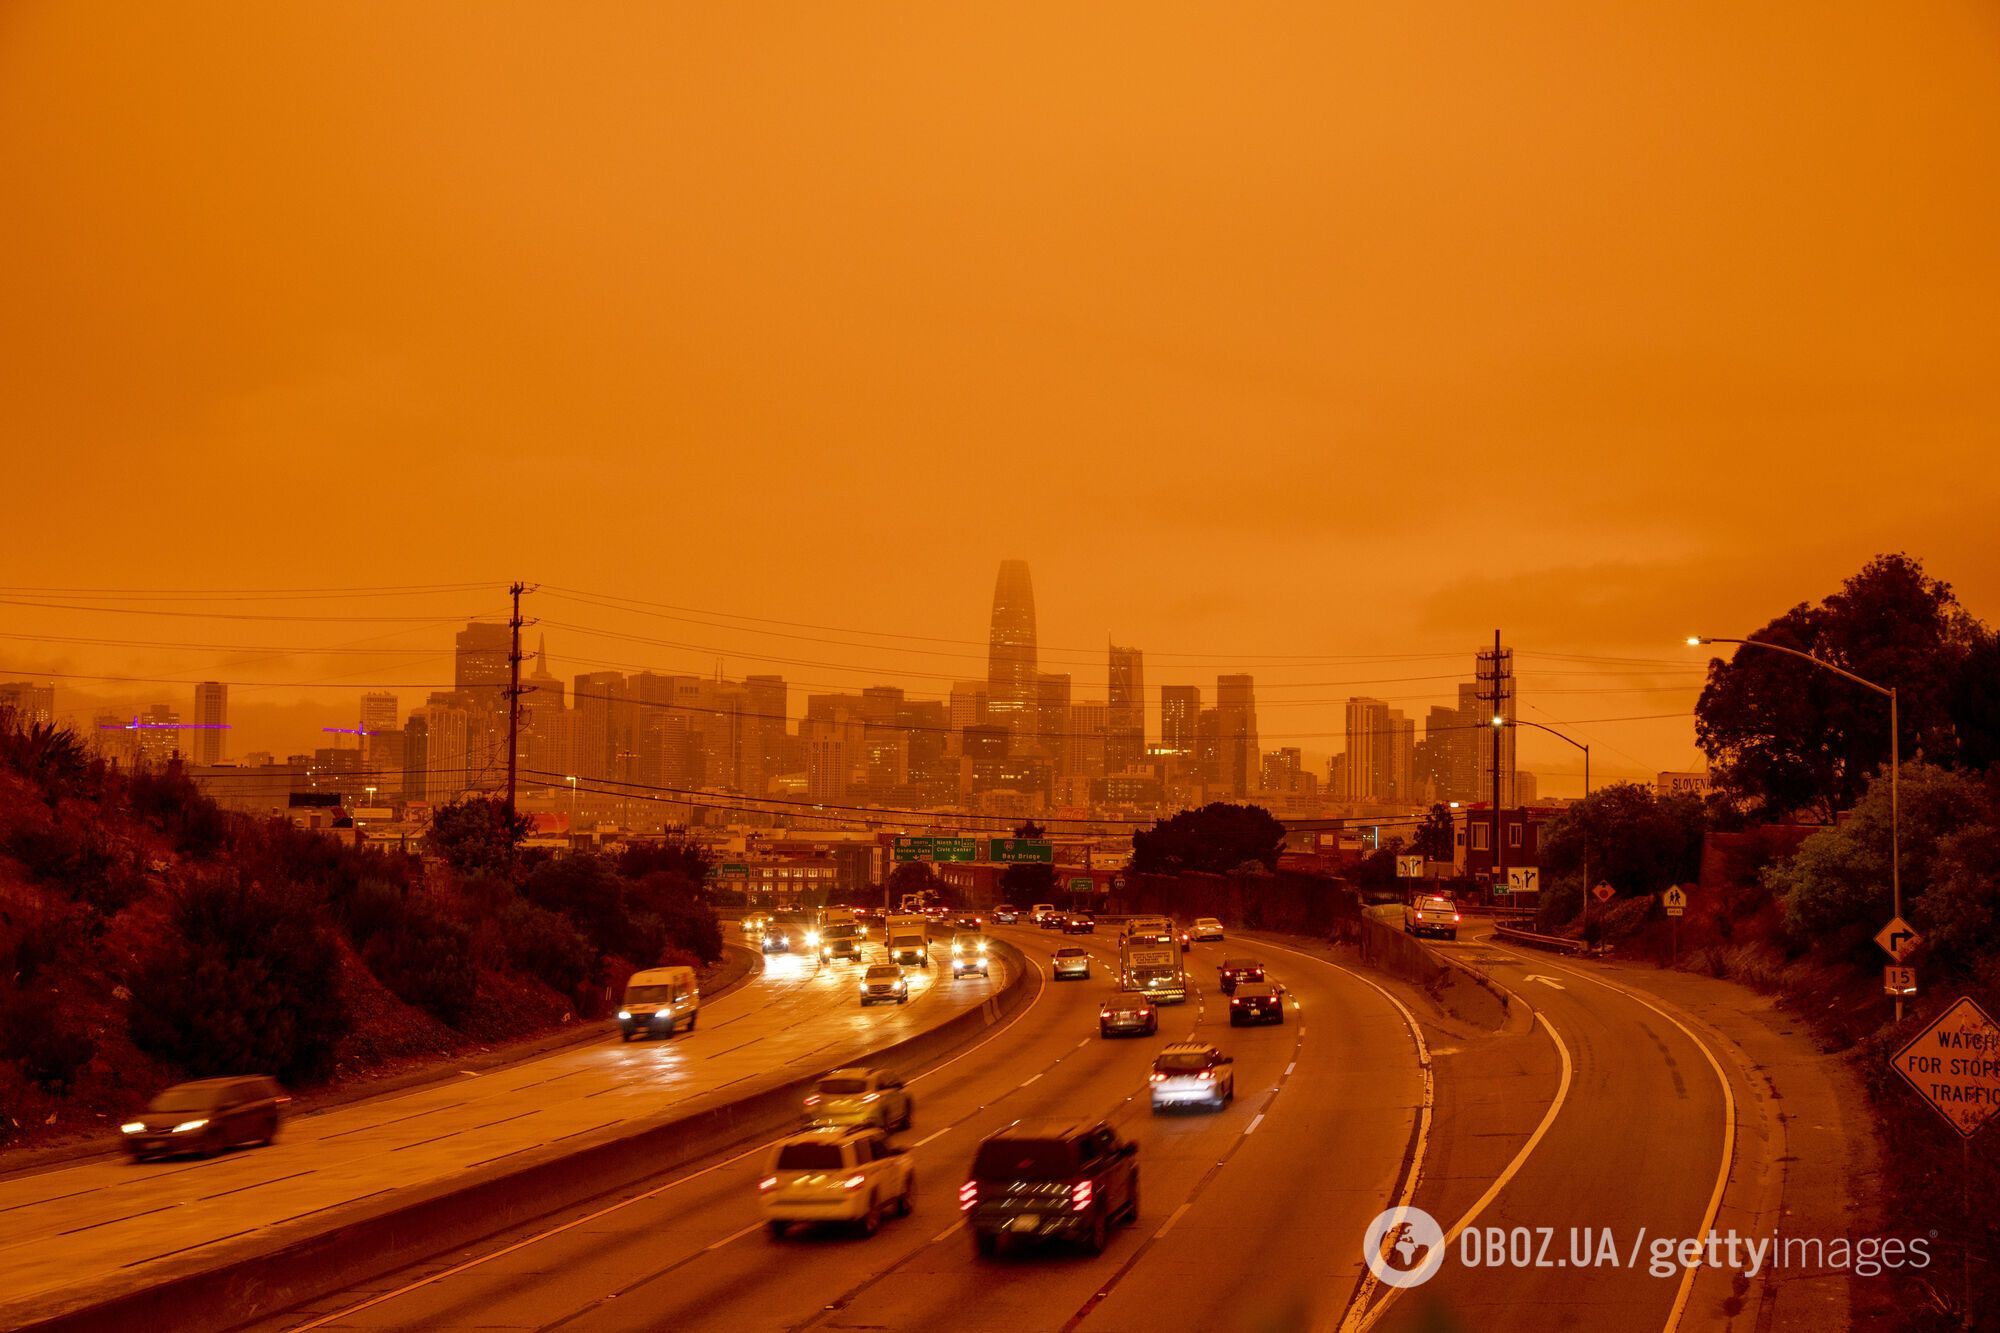 Оранжевое свечение от пожаров в районе залива Сан-Франциско, Калифорния